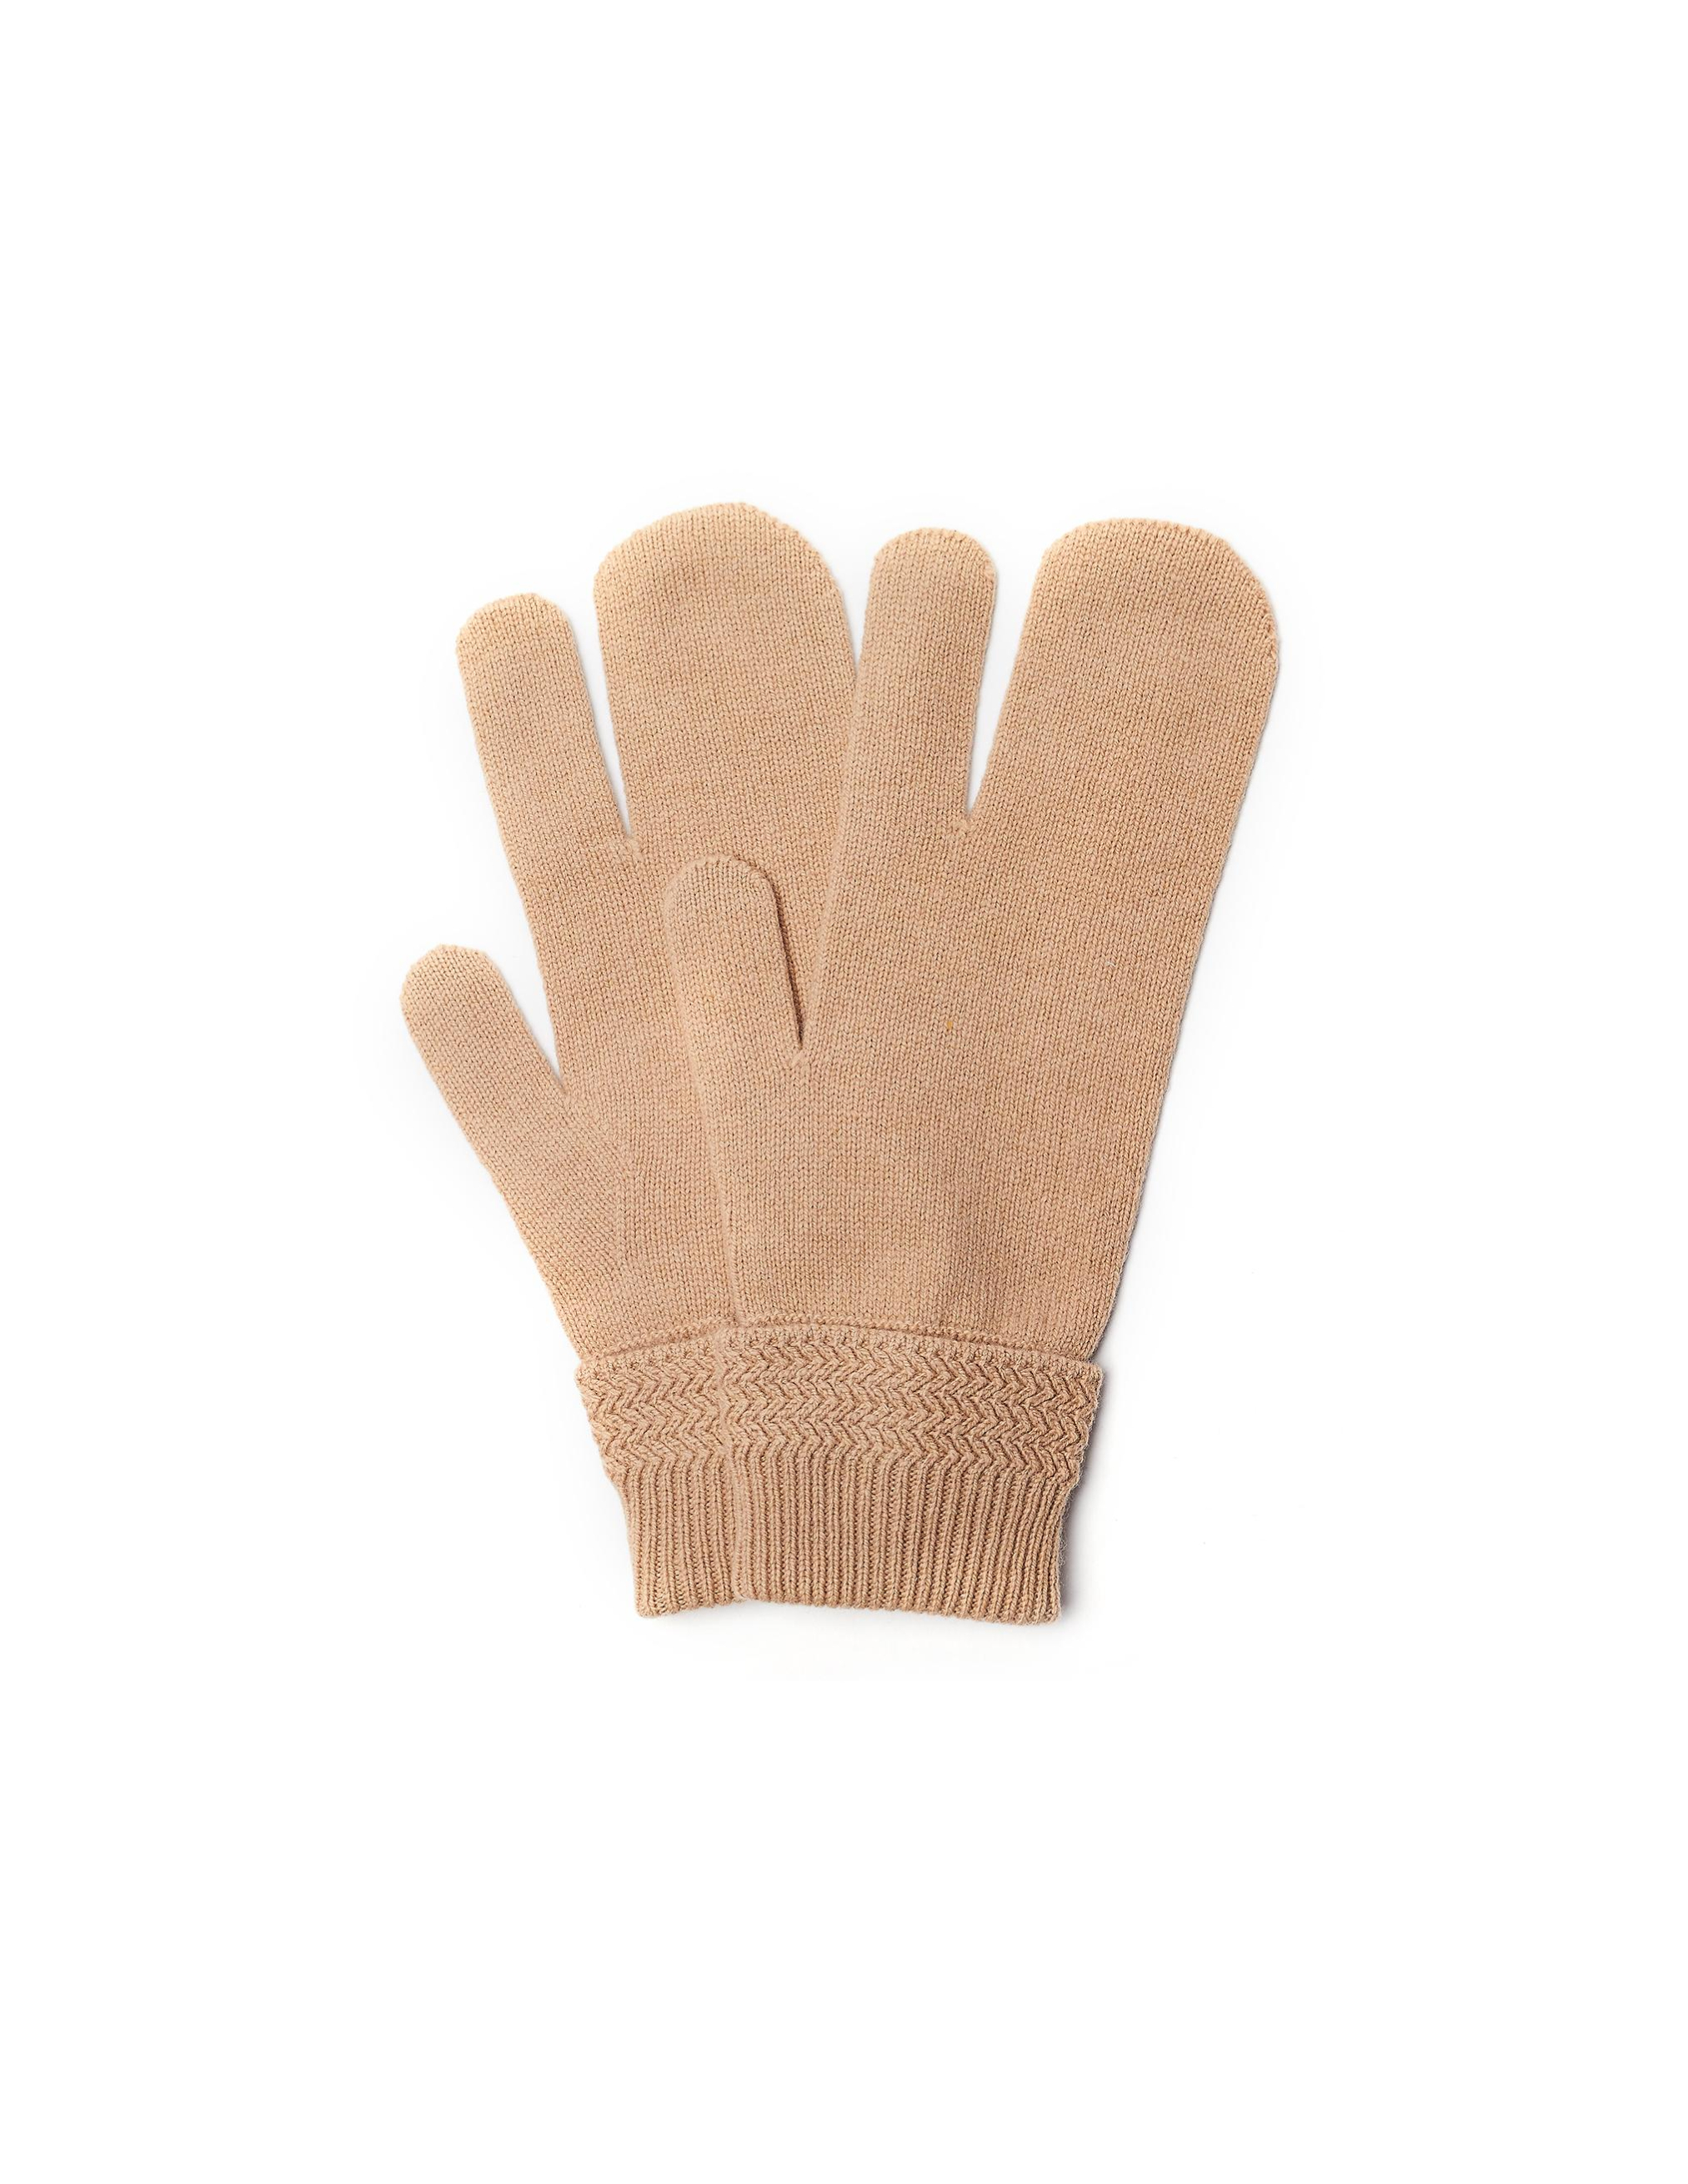 Бежевые перчатки из шерсти и кашемира Maison Margiela S50TS0007/S16825/cml, размер M;L